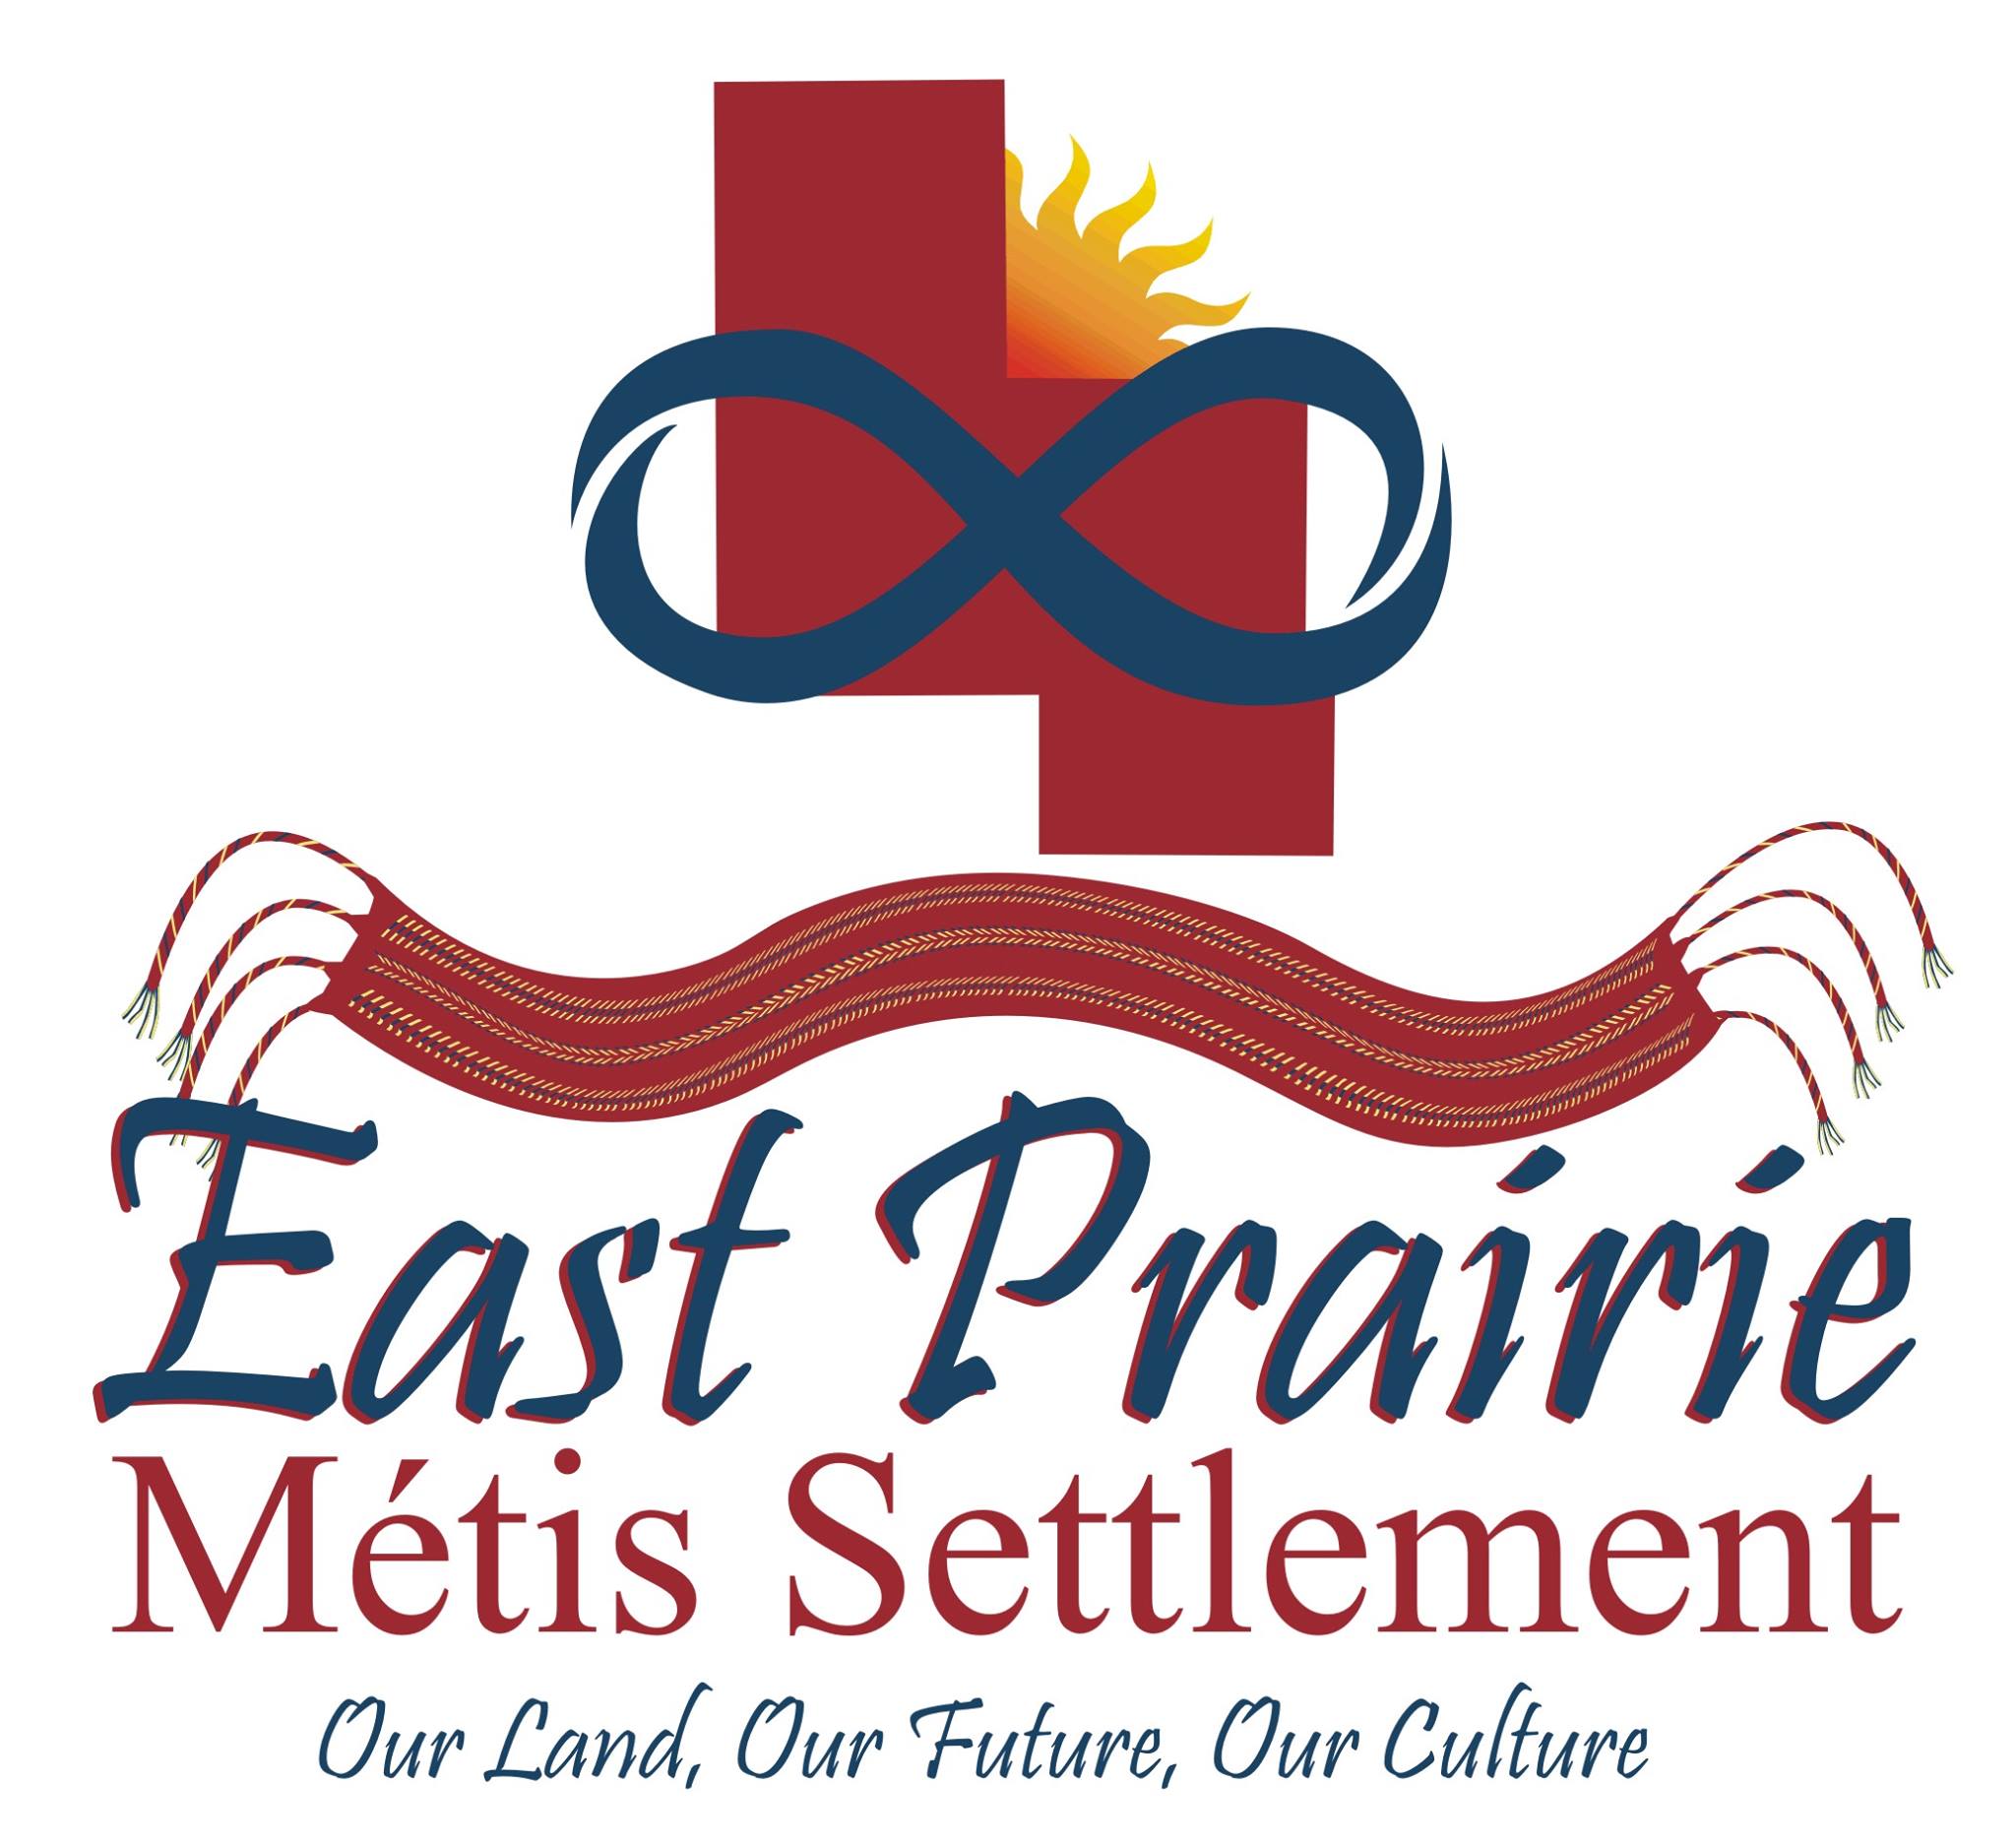 East Prairie Metis Settlement